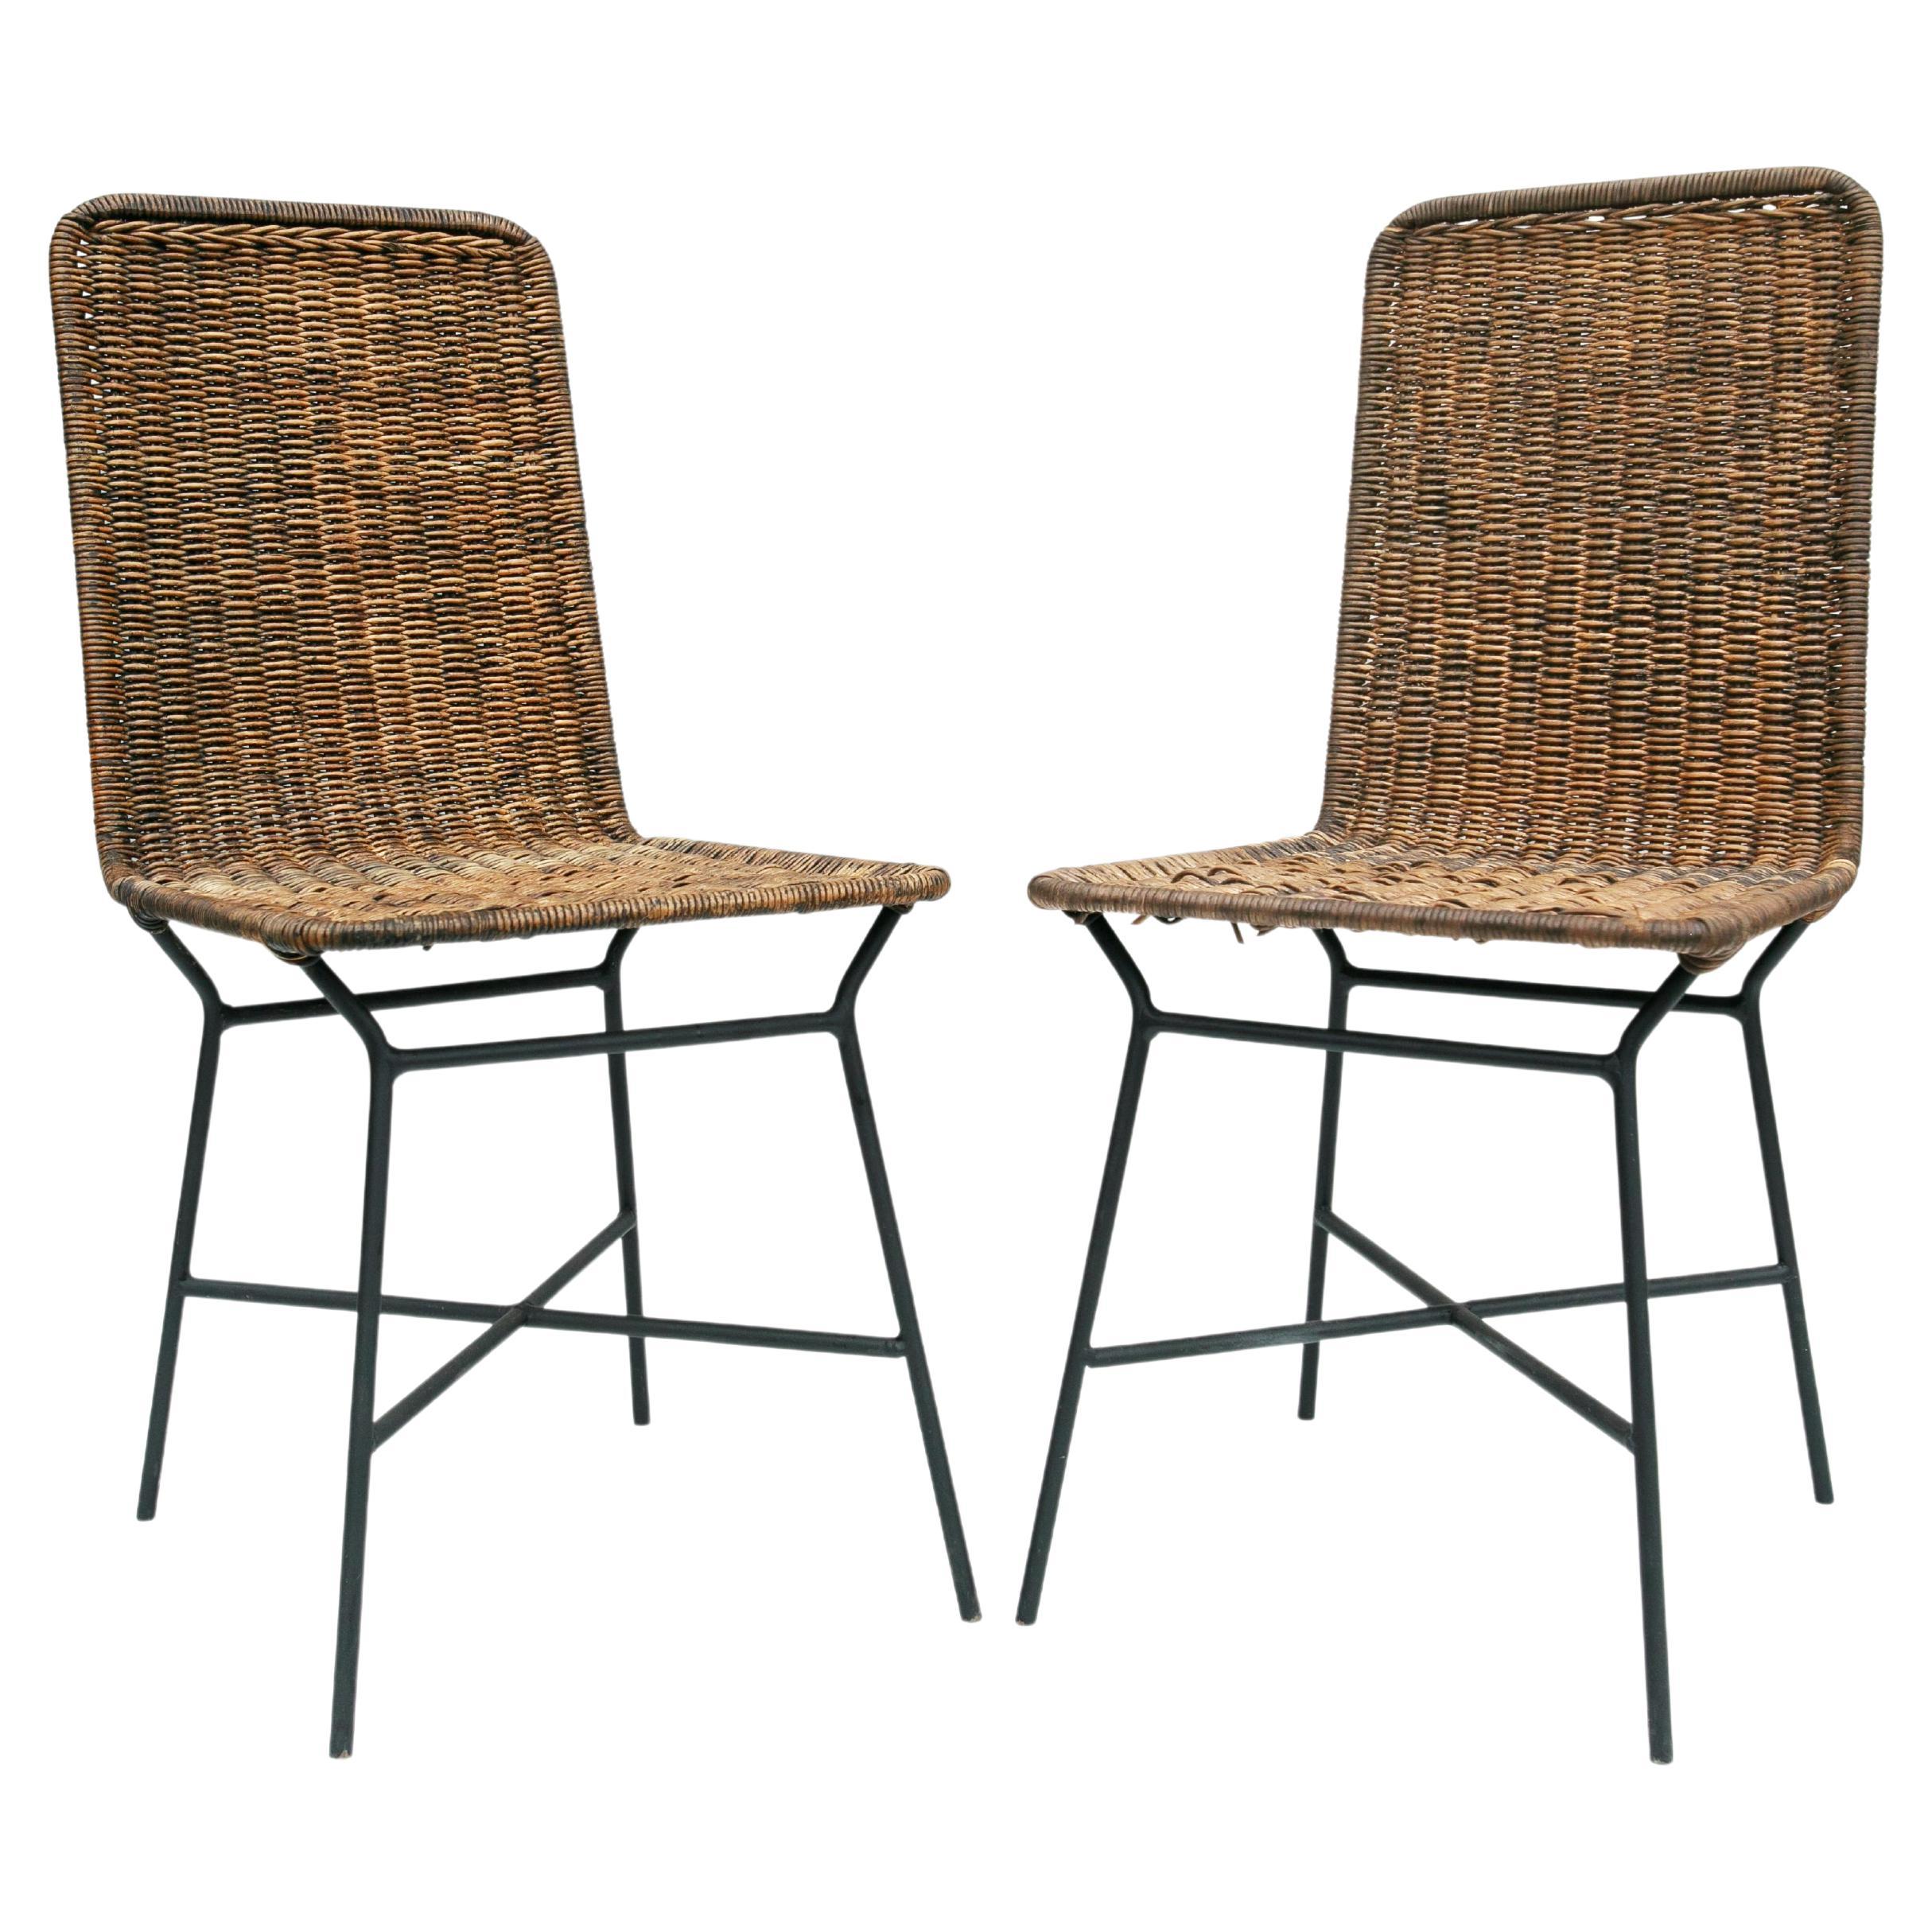 Brasilianische moderne Stühle aus Rohrgeflecht und Metall von Carlo Hauner, 1950er Jahre, Brasilien im Angebot